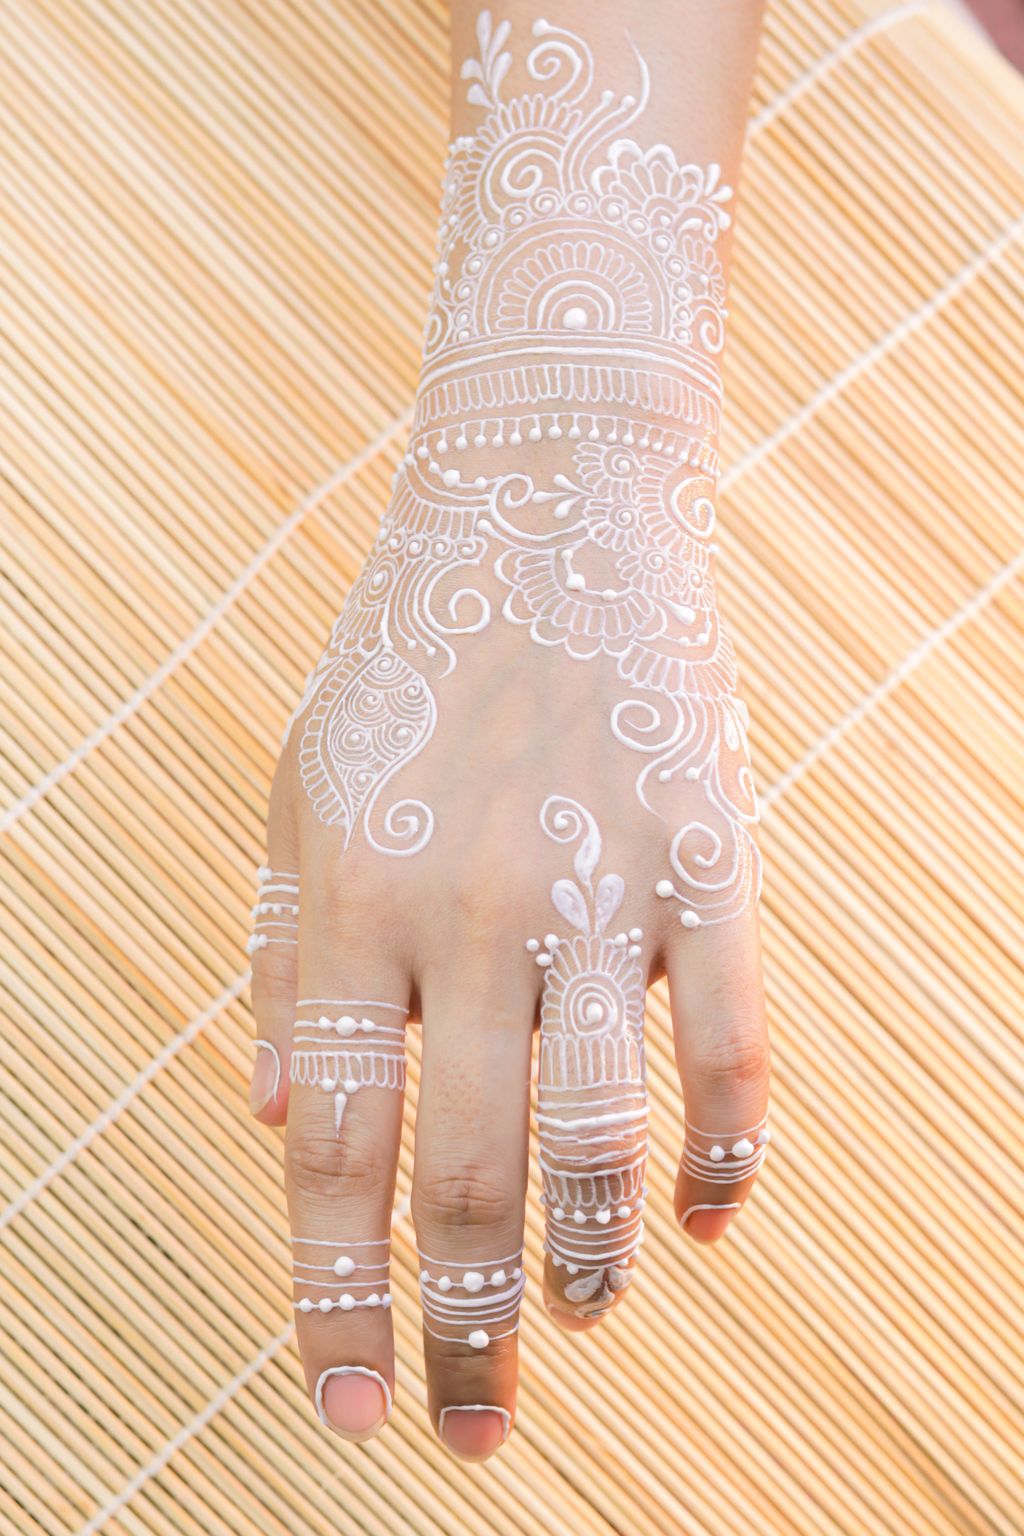 Contoh motif gambar henna simple yang mudah ditiru.